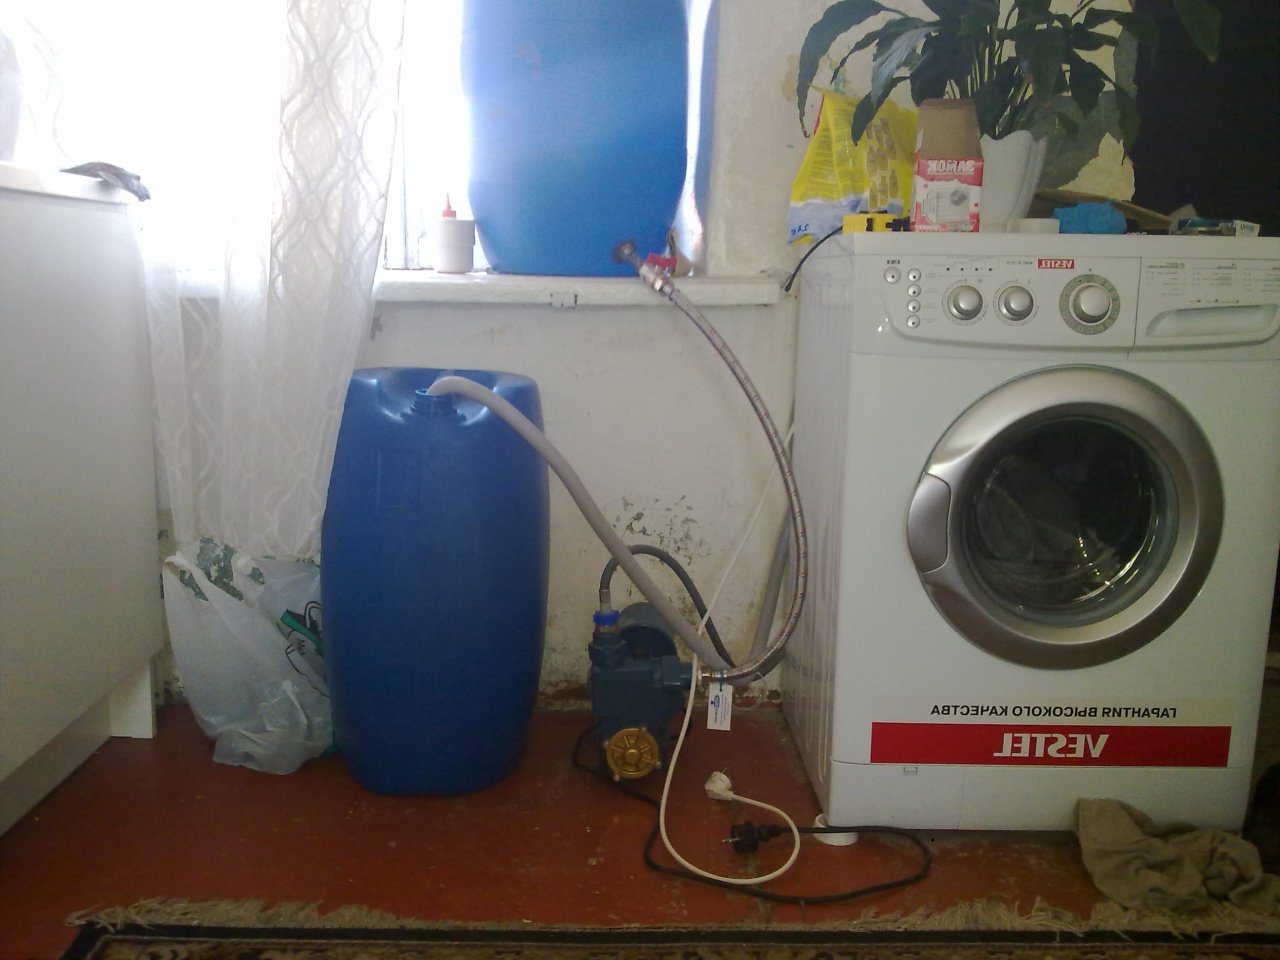 conectar una lavadora sin agua corriente